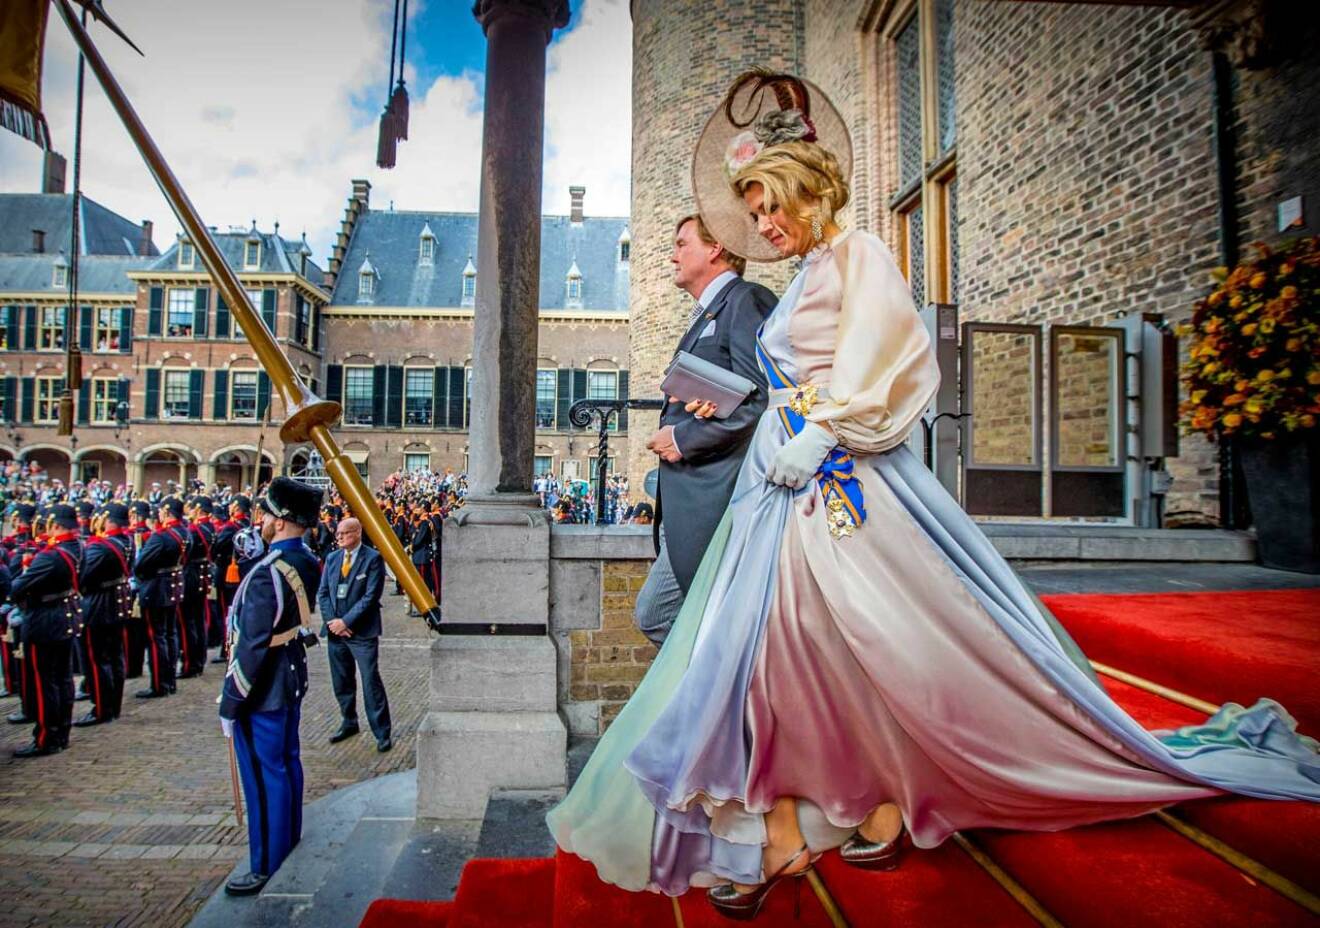 När parlamentet öppnar i Haag är klädkoden jackett för herrarna och golvlång klänning, hatt och handskar för damerna.